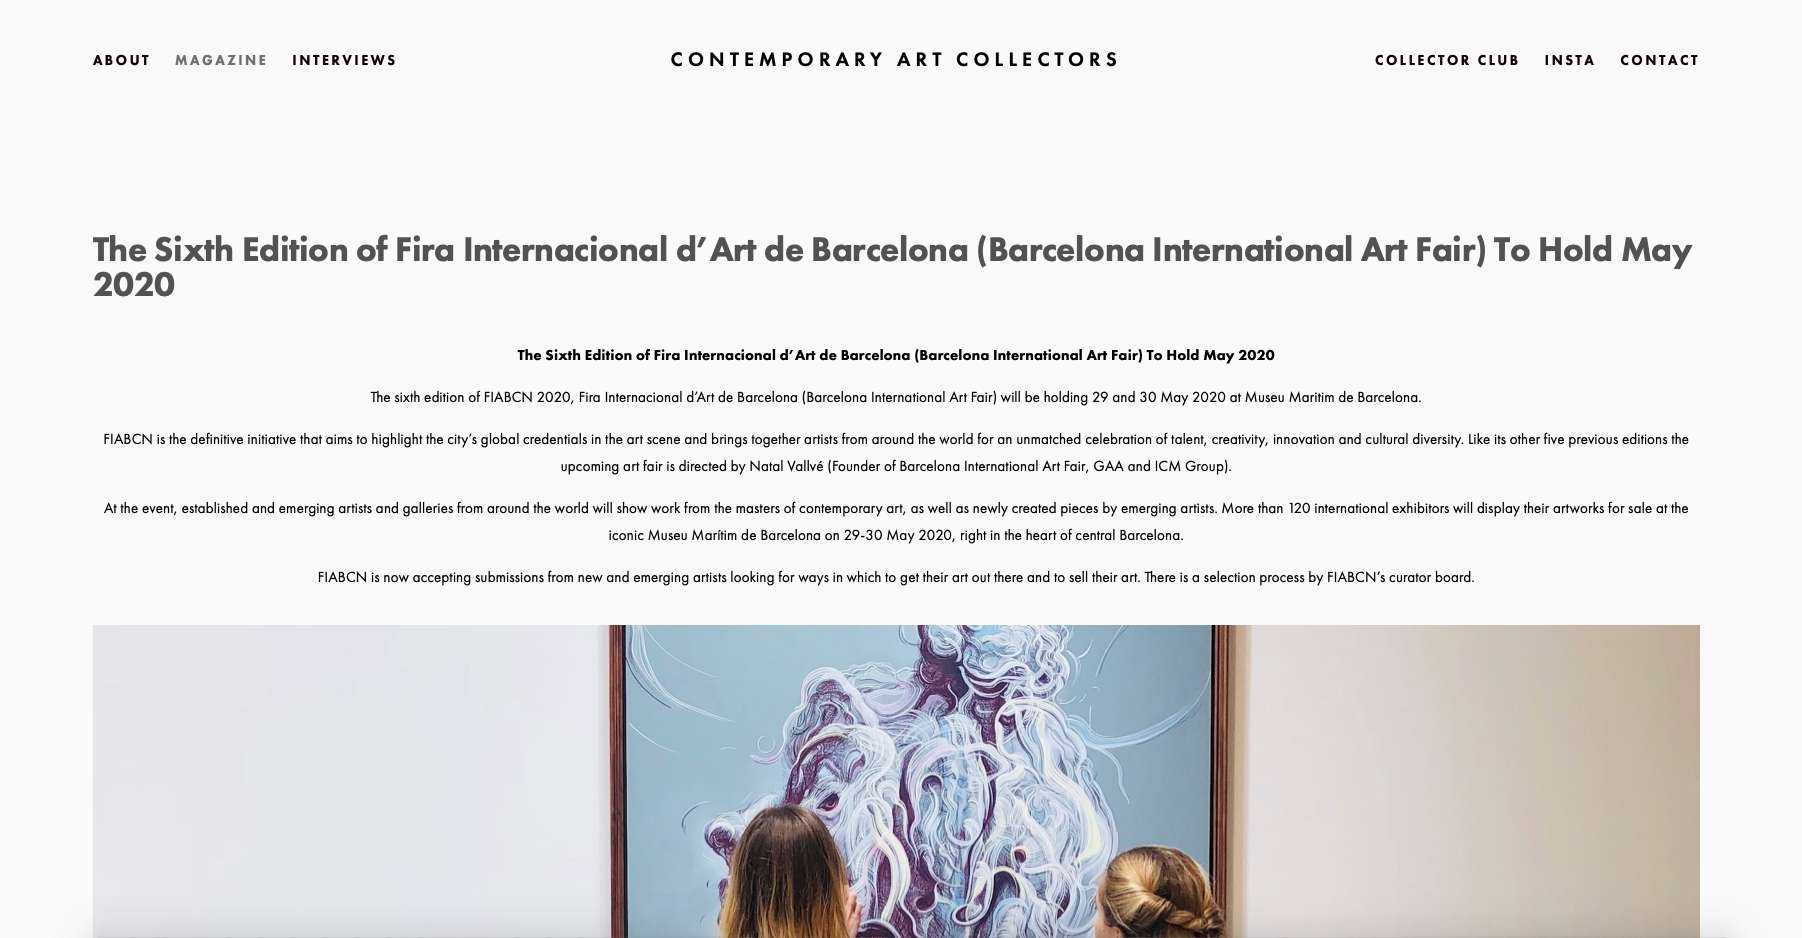 Contemporary Art Collectors